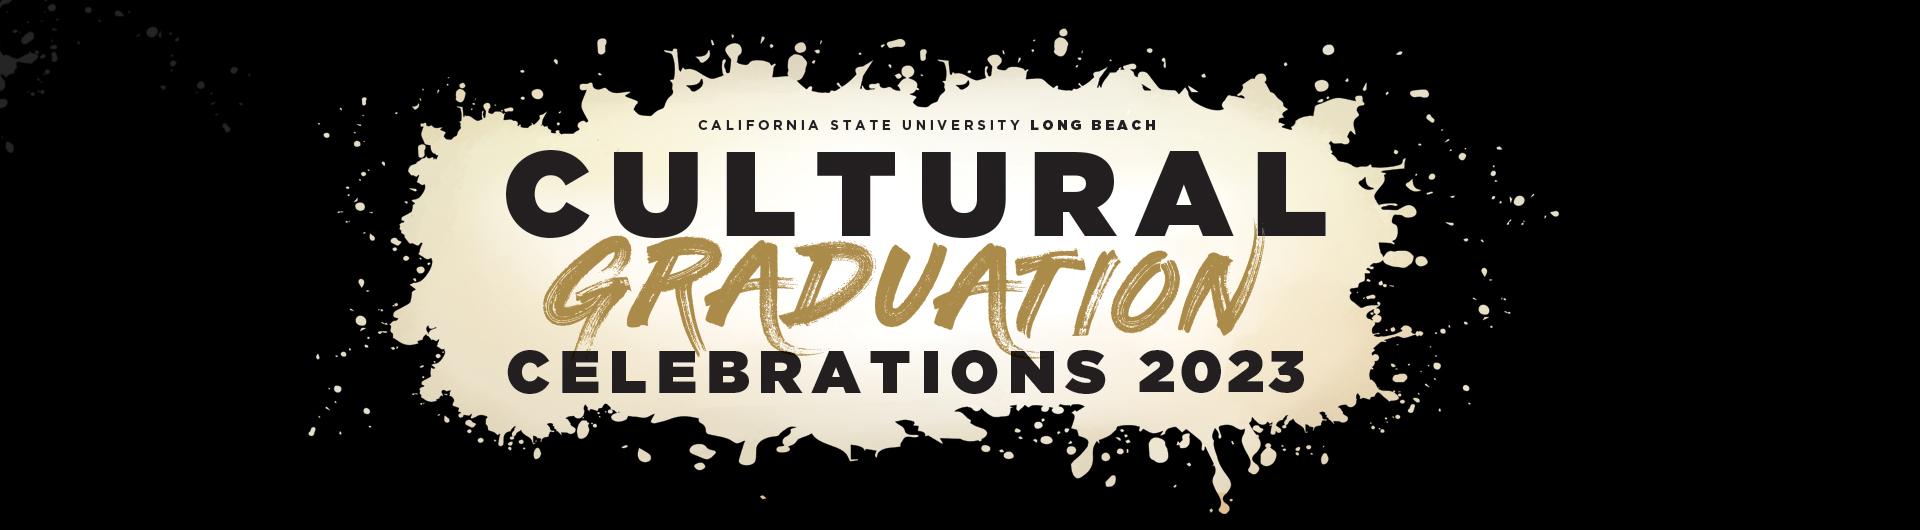 Cultural Graduation Celebrations 2023